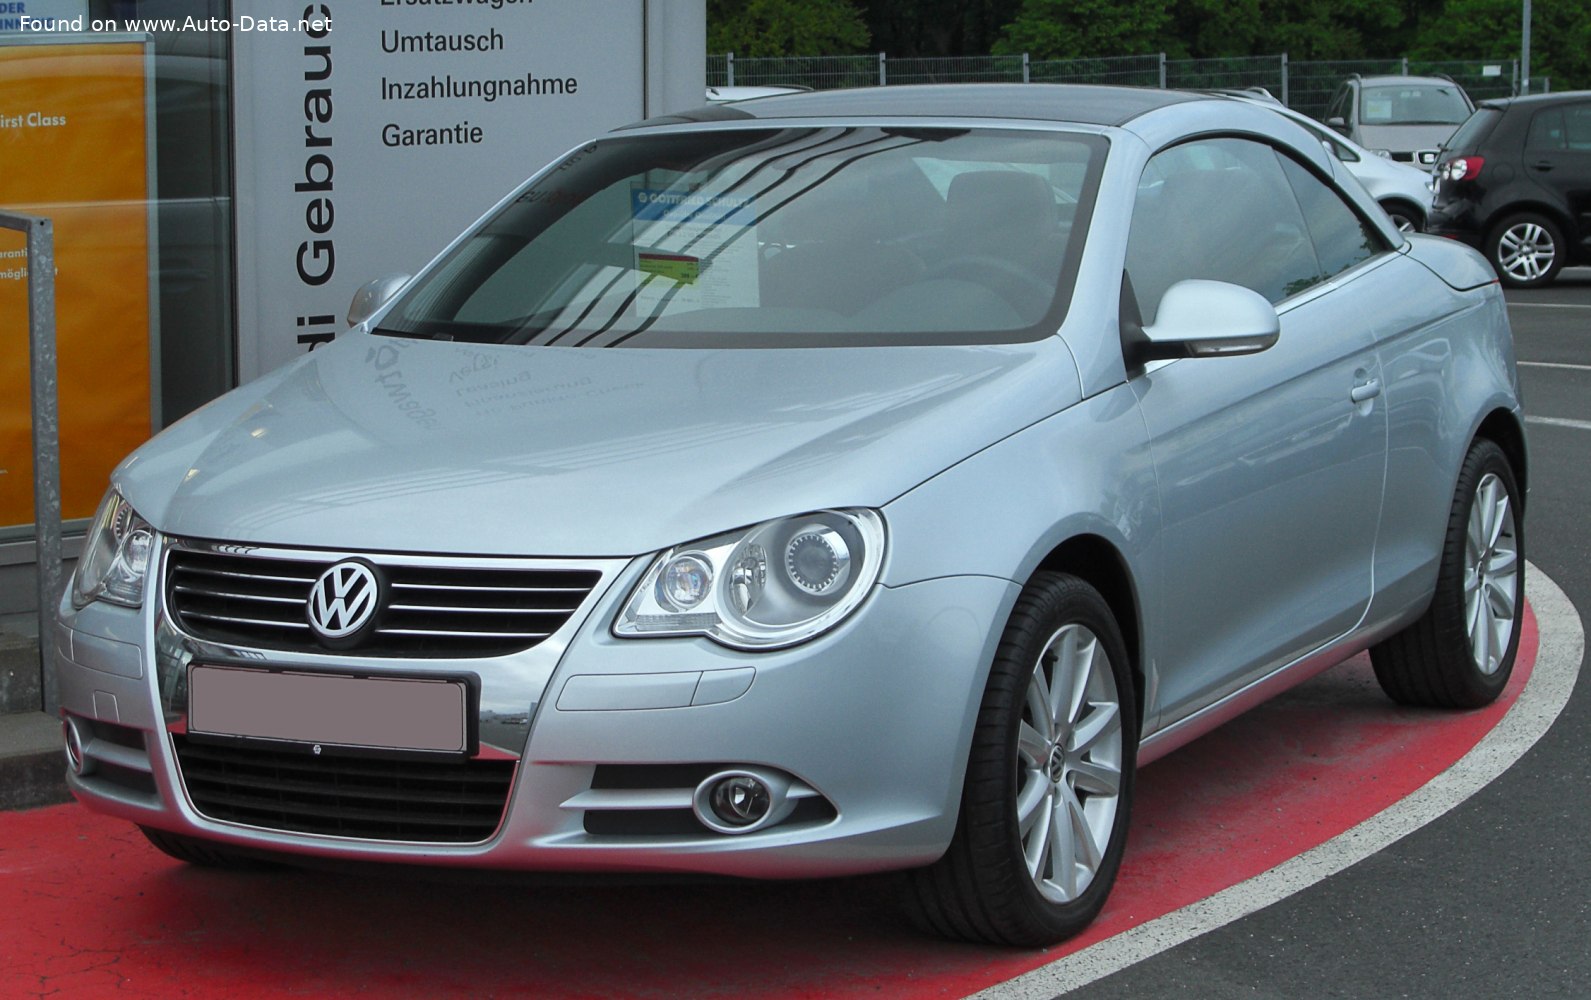 2006 Volkswagen Eos 3.2 V6 (250 Hp) DSG  Technical specs, data, fuel  consumption, Dimensions